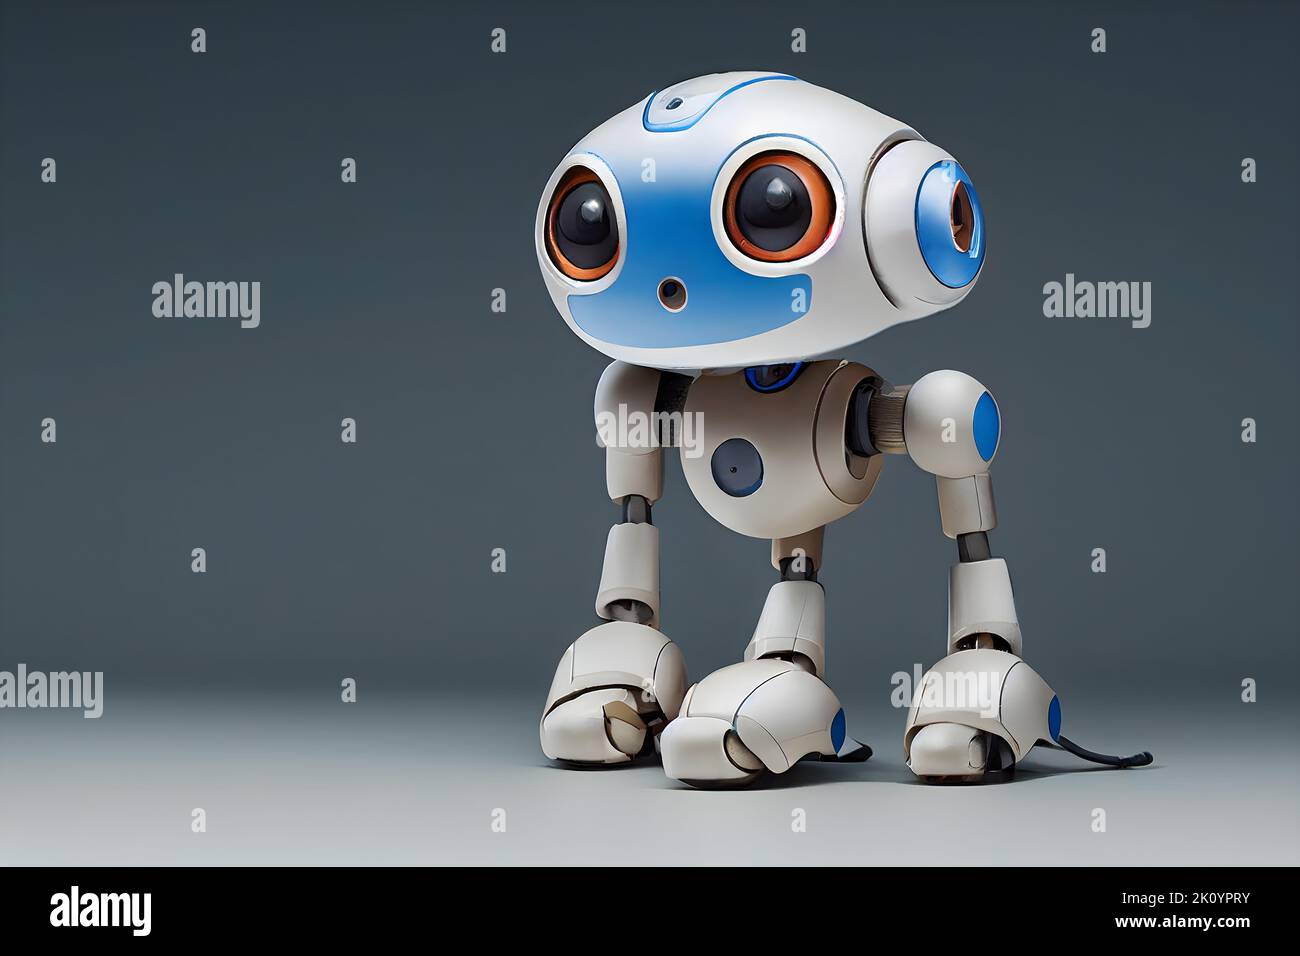 Illustration de la caricature d'un robot de chiot curieux et frais. 3D rendu. Banque D'Images